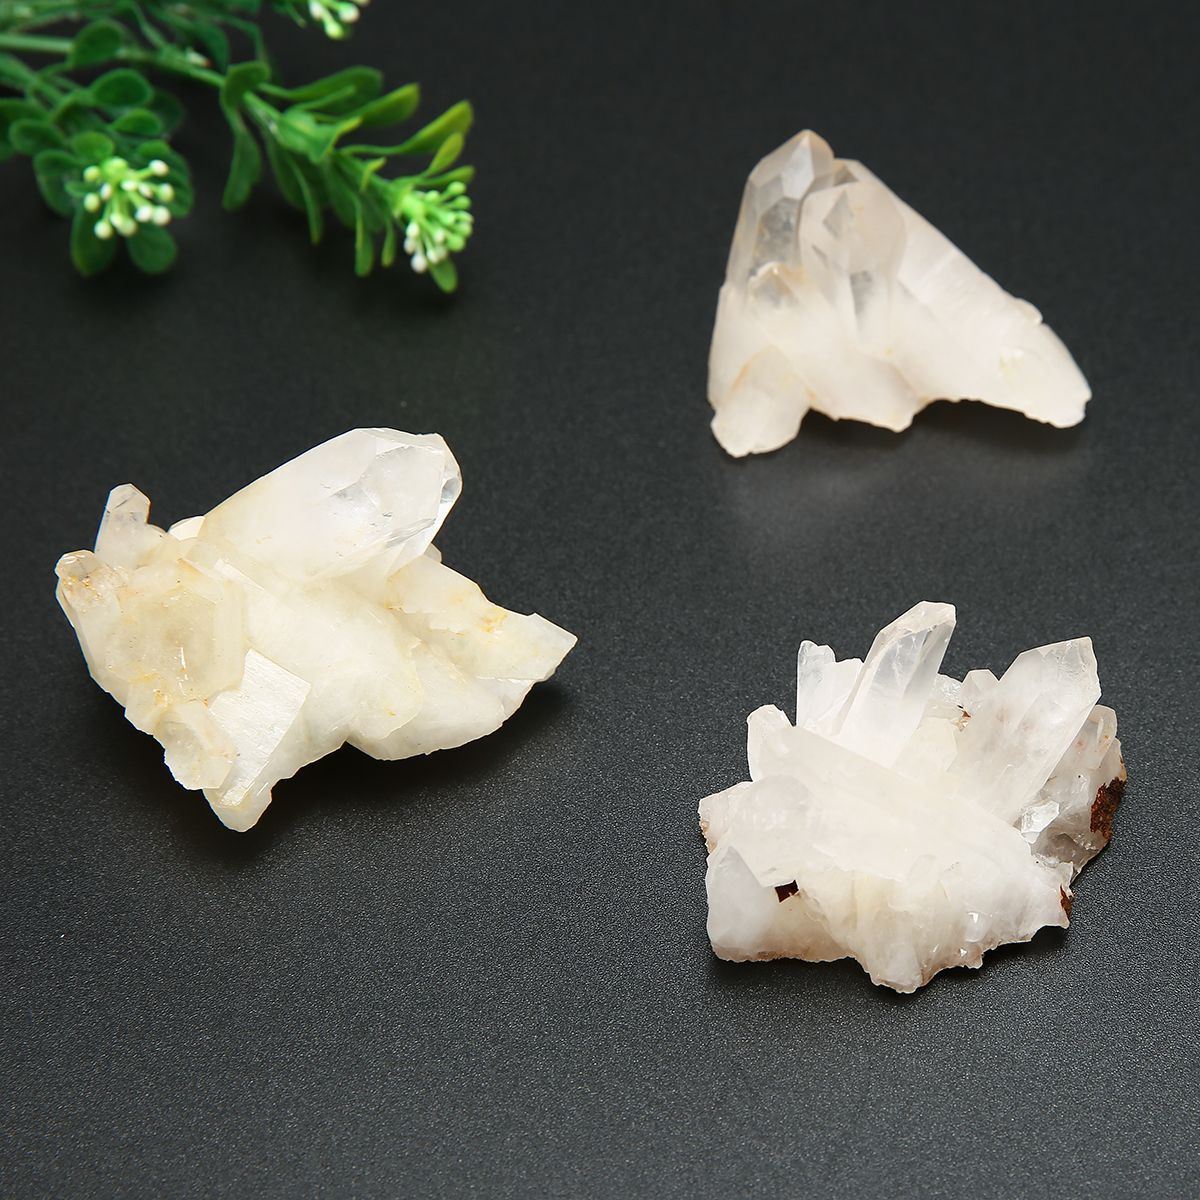 30g50g80g100g-Natural-Crystal-Quartz-Cluster-Specimen-Healing-Mineral-Decorations-1520145